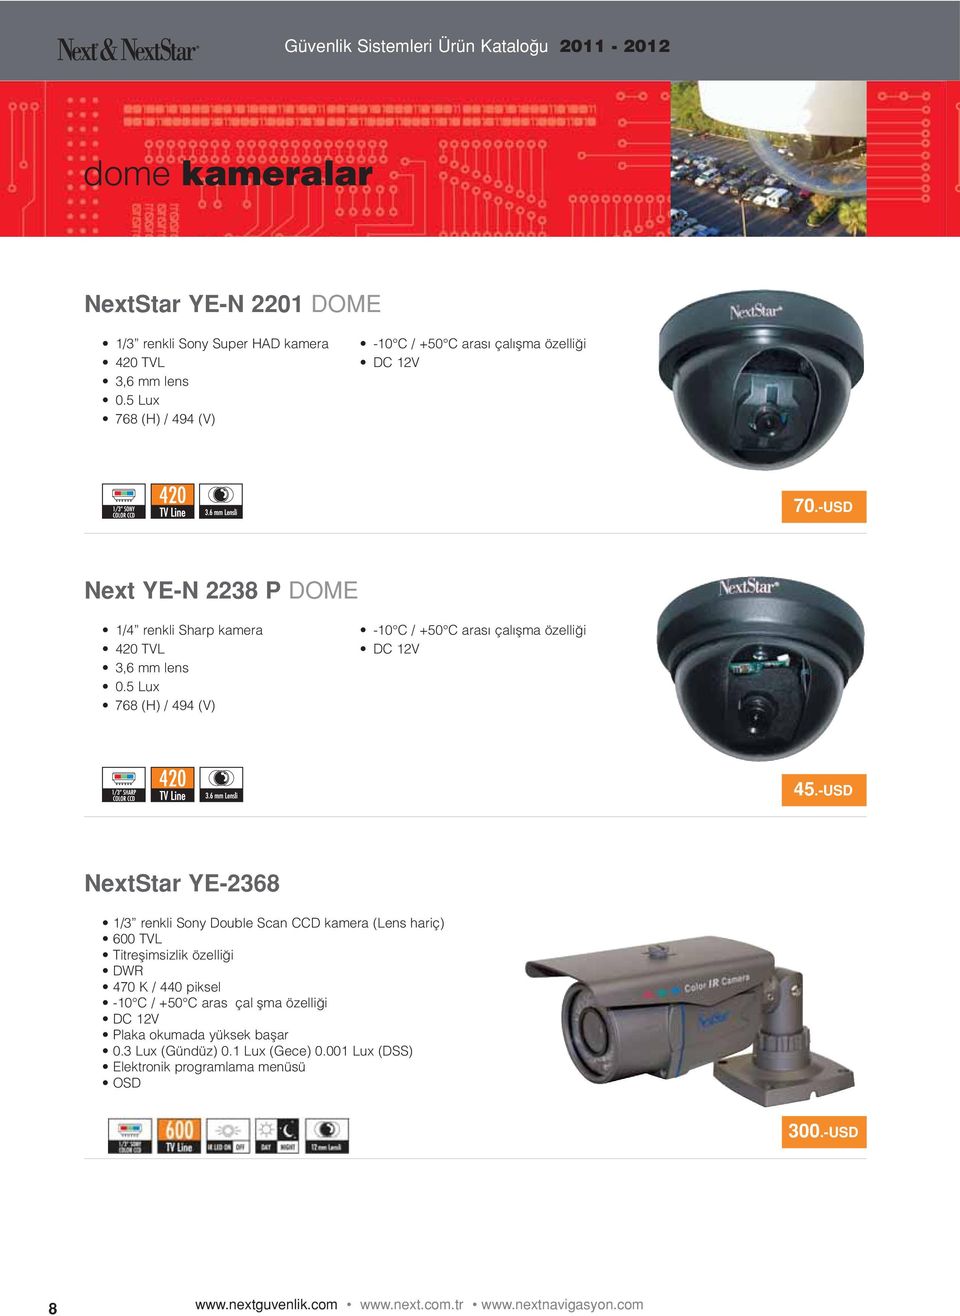 -USD NextStar YE-2368 1/3 renkli Sony Double Scan CCD kamera (Lens hariç) 600 TVL Titreşimsizlik özelliği DWR 470 K / 440 piksel -10 C / +50 C